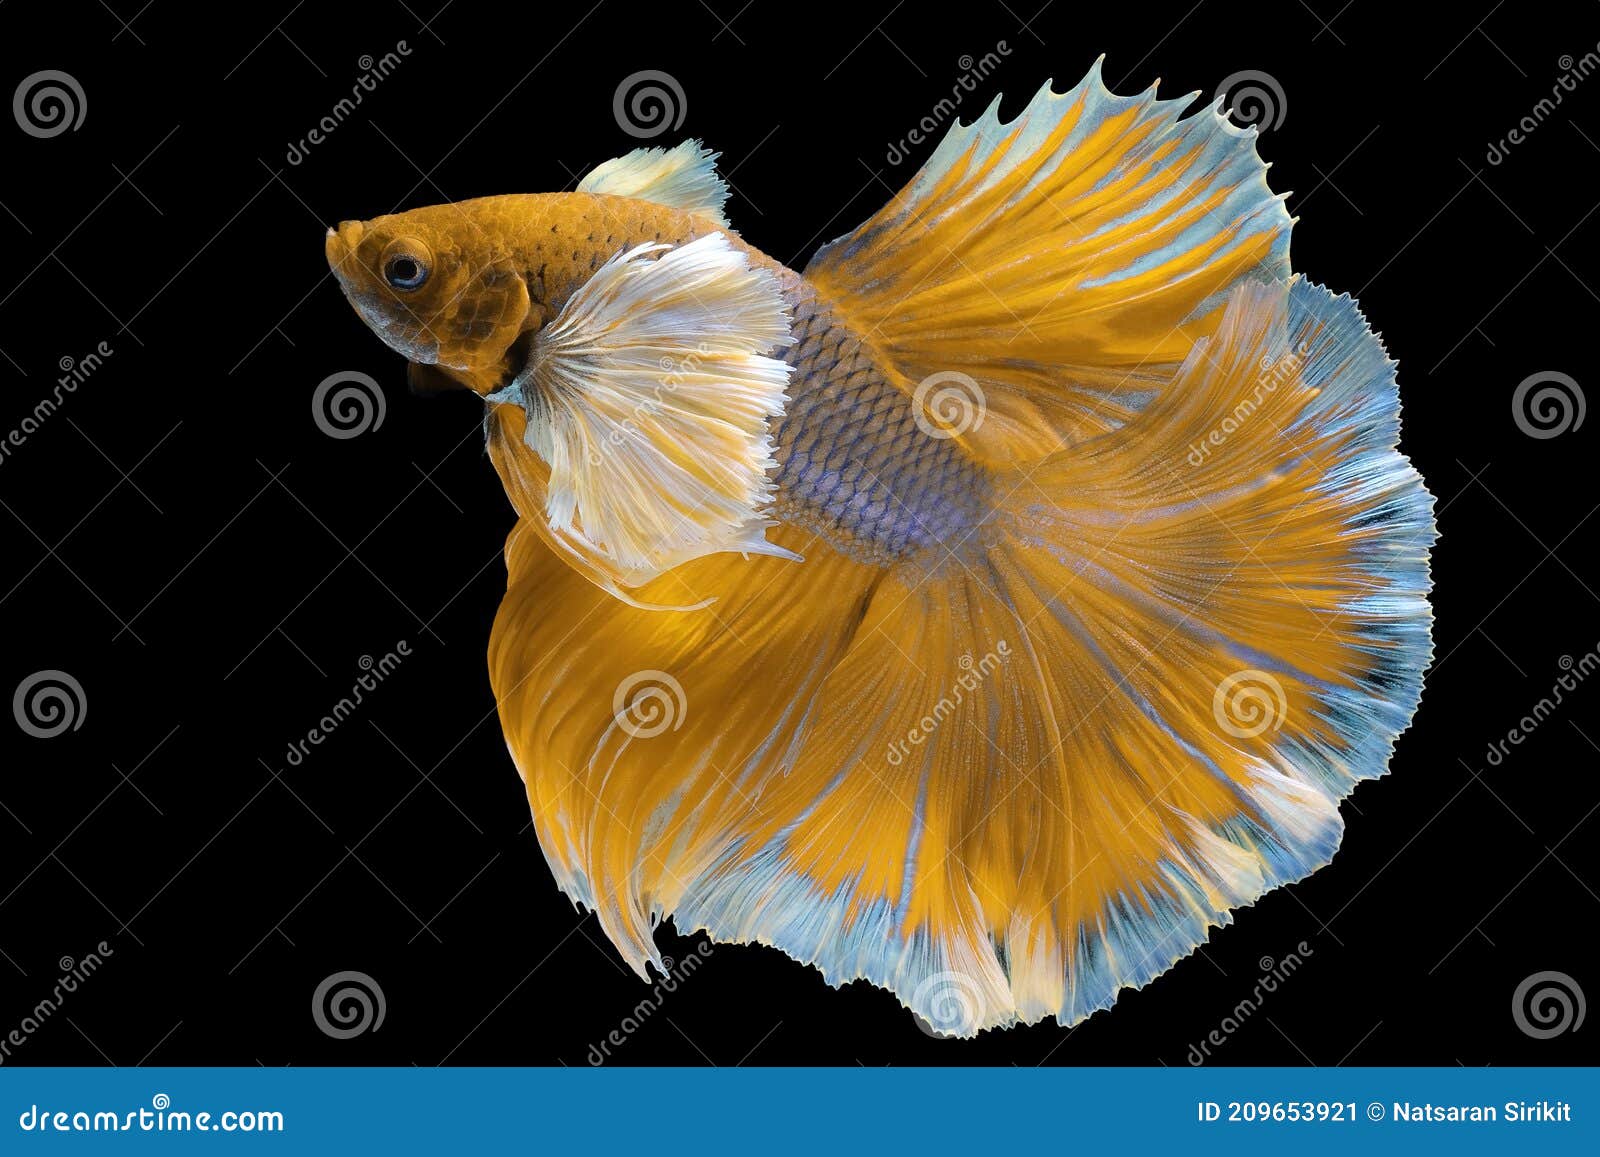 Beautiful Movement of Yellow Betta Fish, Siamese Fighting Fish ...